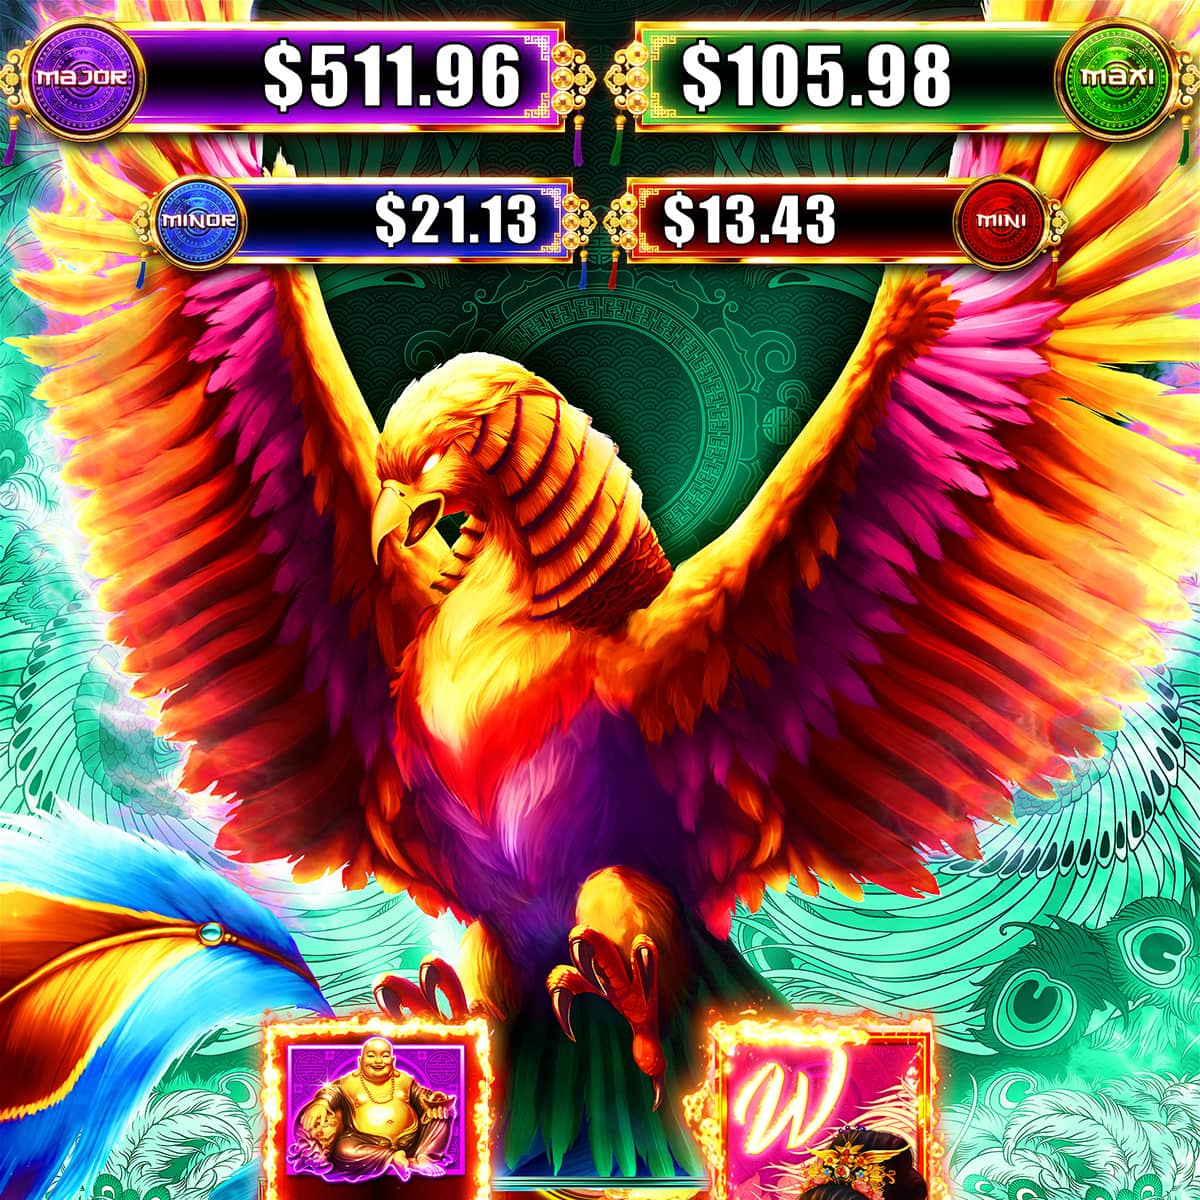 Image du Phoenix et écran affichant les Jackpots 